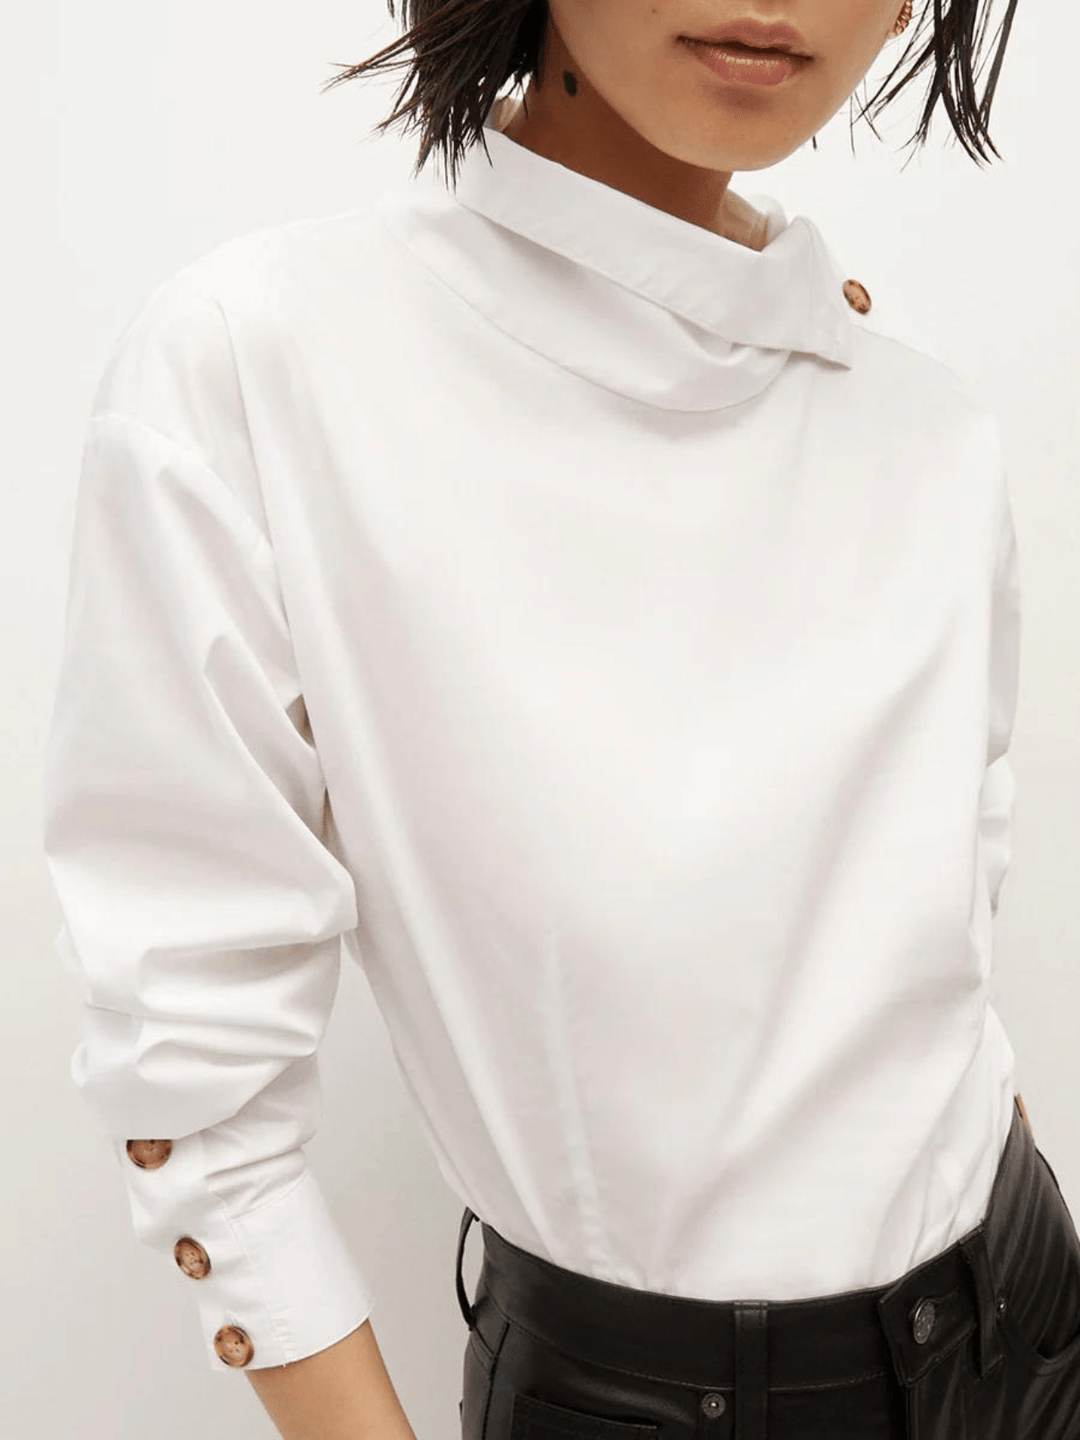 Ein Model trägt eine stilvolle weiße Bluse mit einem asymmetrischen Kragen und einer einzigartigen Knopfleiste entlang des linken Ärmels, kombiniert mit schwarzen Lederhosen.